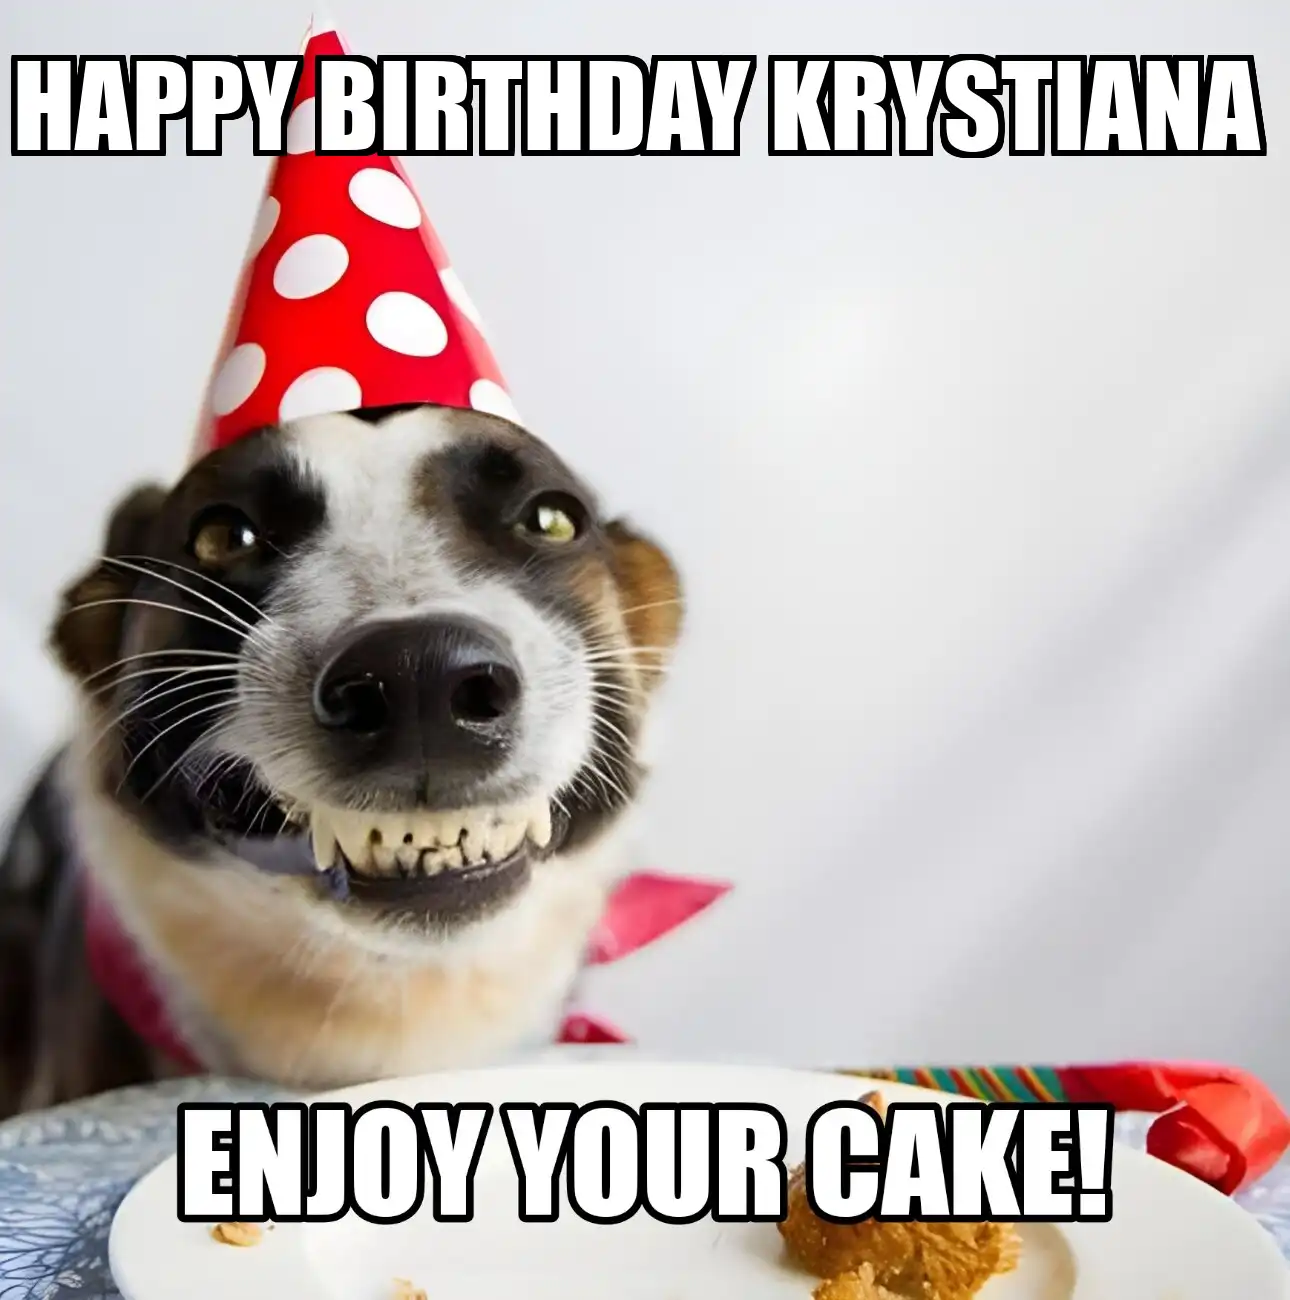 Happy Birthday Krystiana Enjoy Your Cake Dog Meme